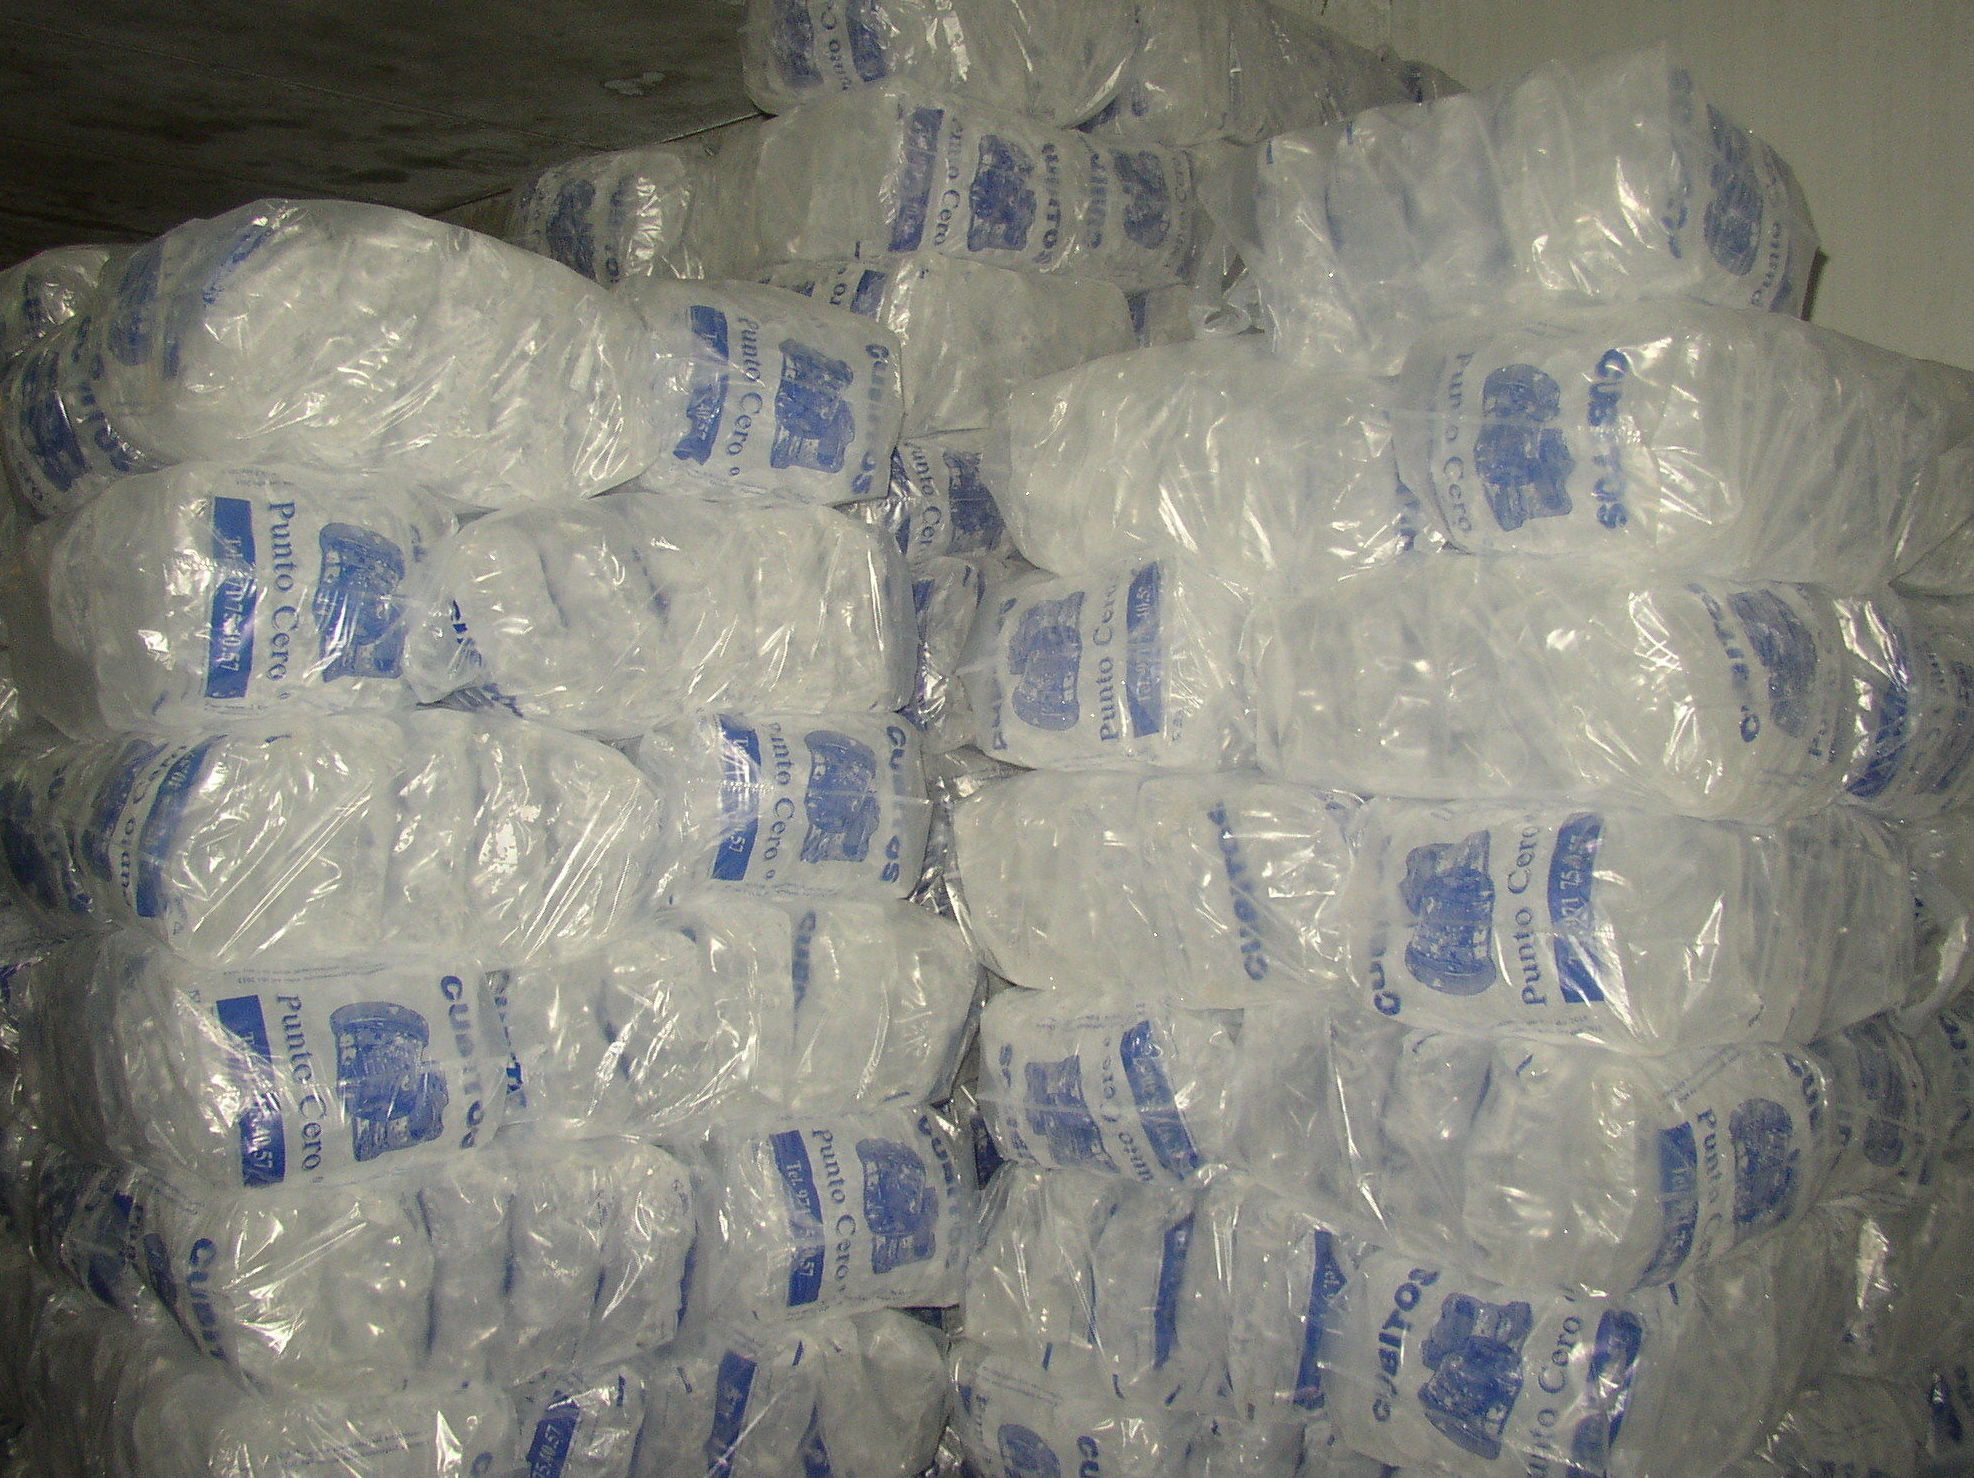 Bolsas de hielo de todo tipo y tamaño (5x2kg.) Cubito. Picado, Escama. 